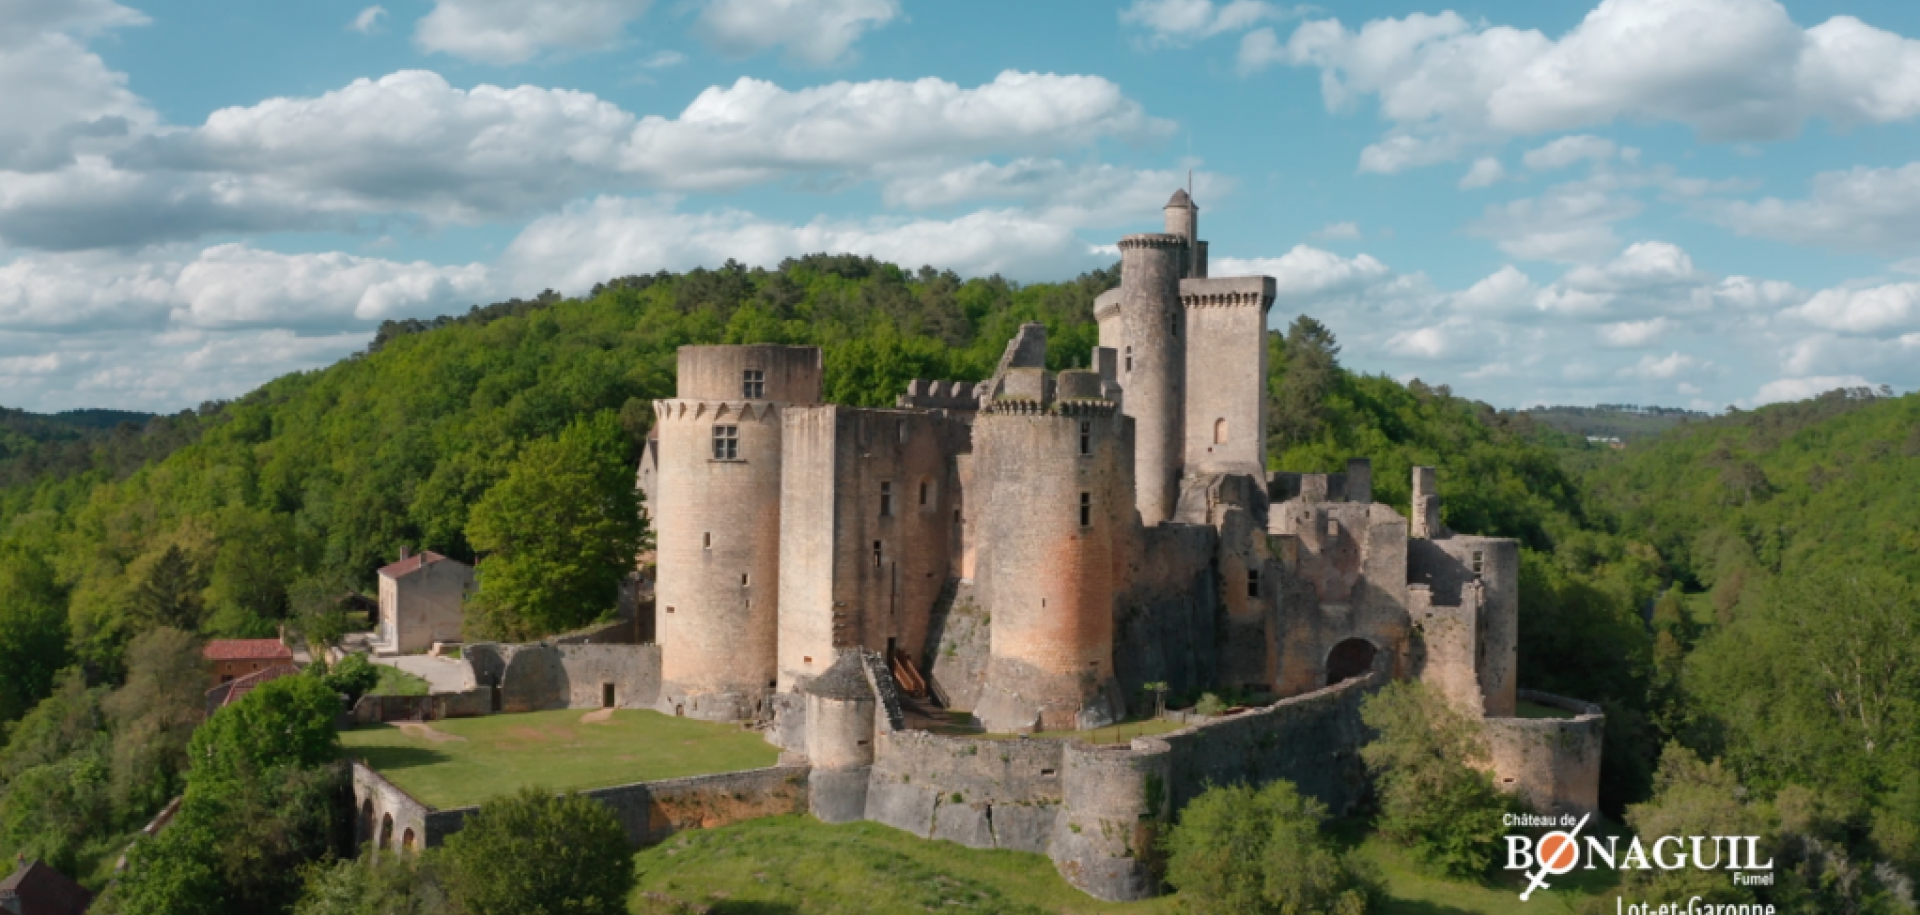 Le château de Bonaguil domine les vallées